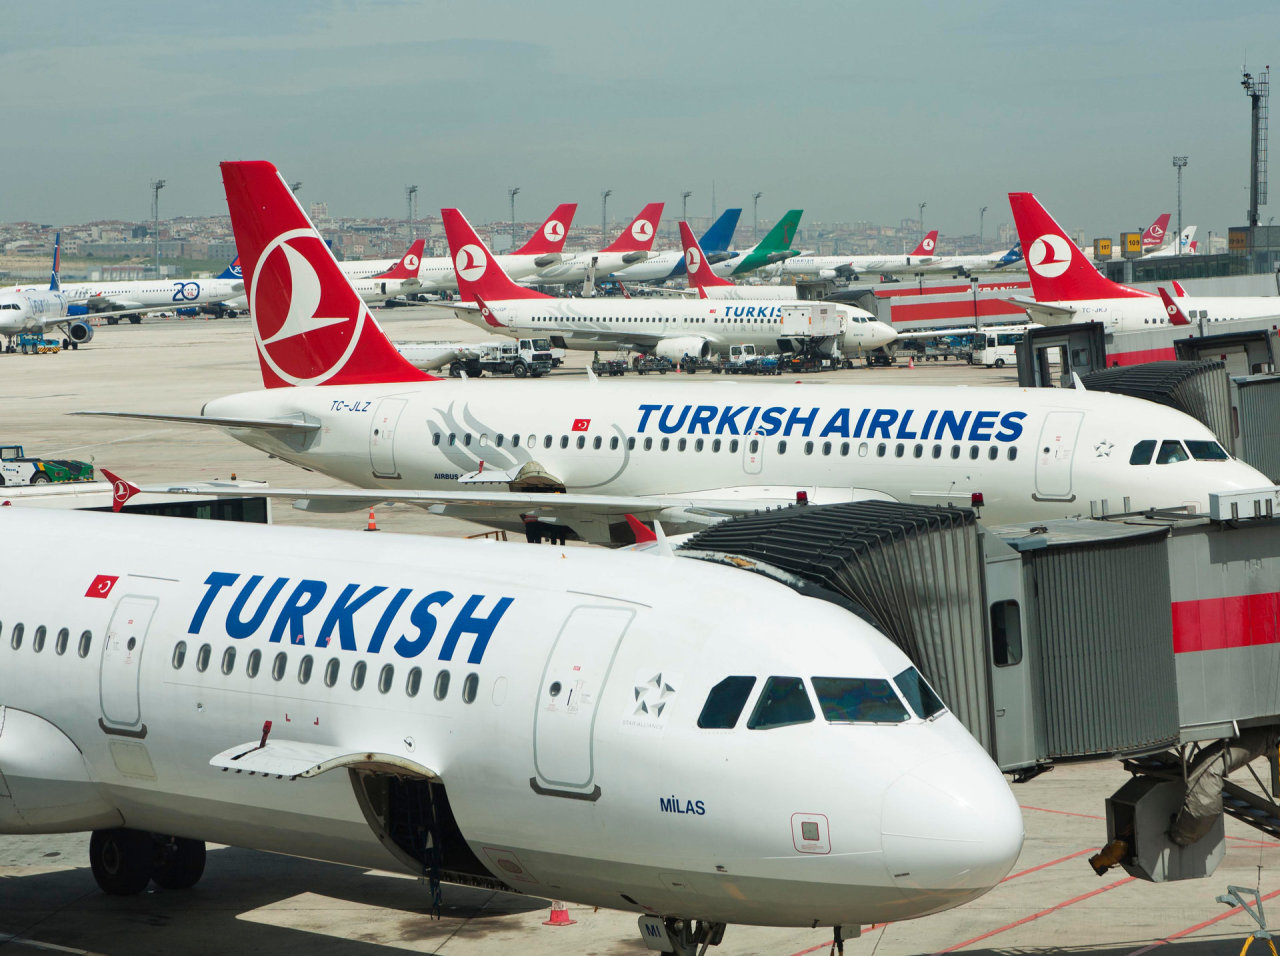 Rusija verda pykčiu dėl „Turkish airlines“ atsisakymo skraidinti rusus